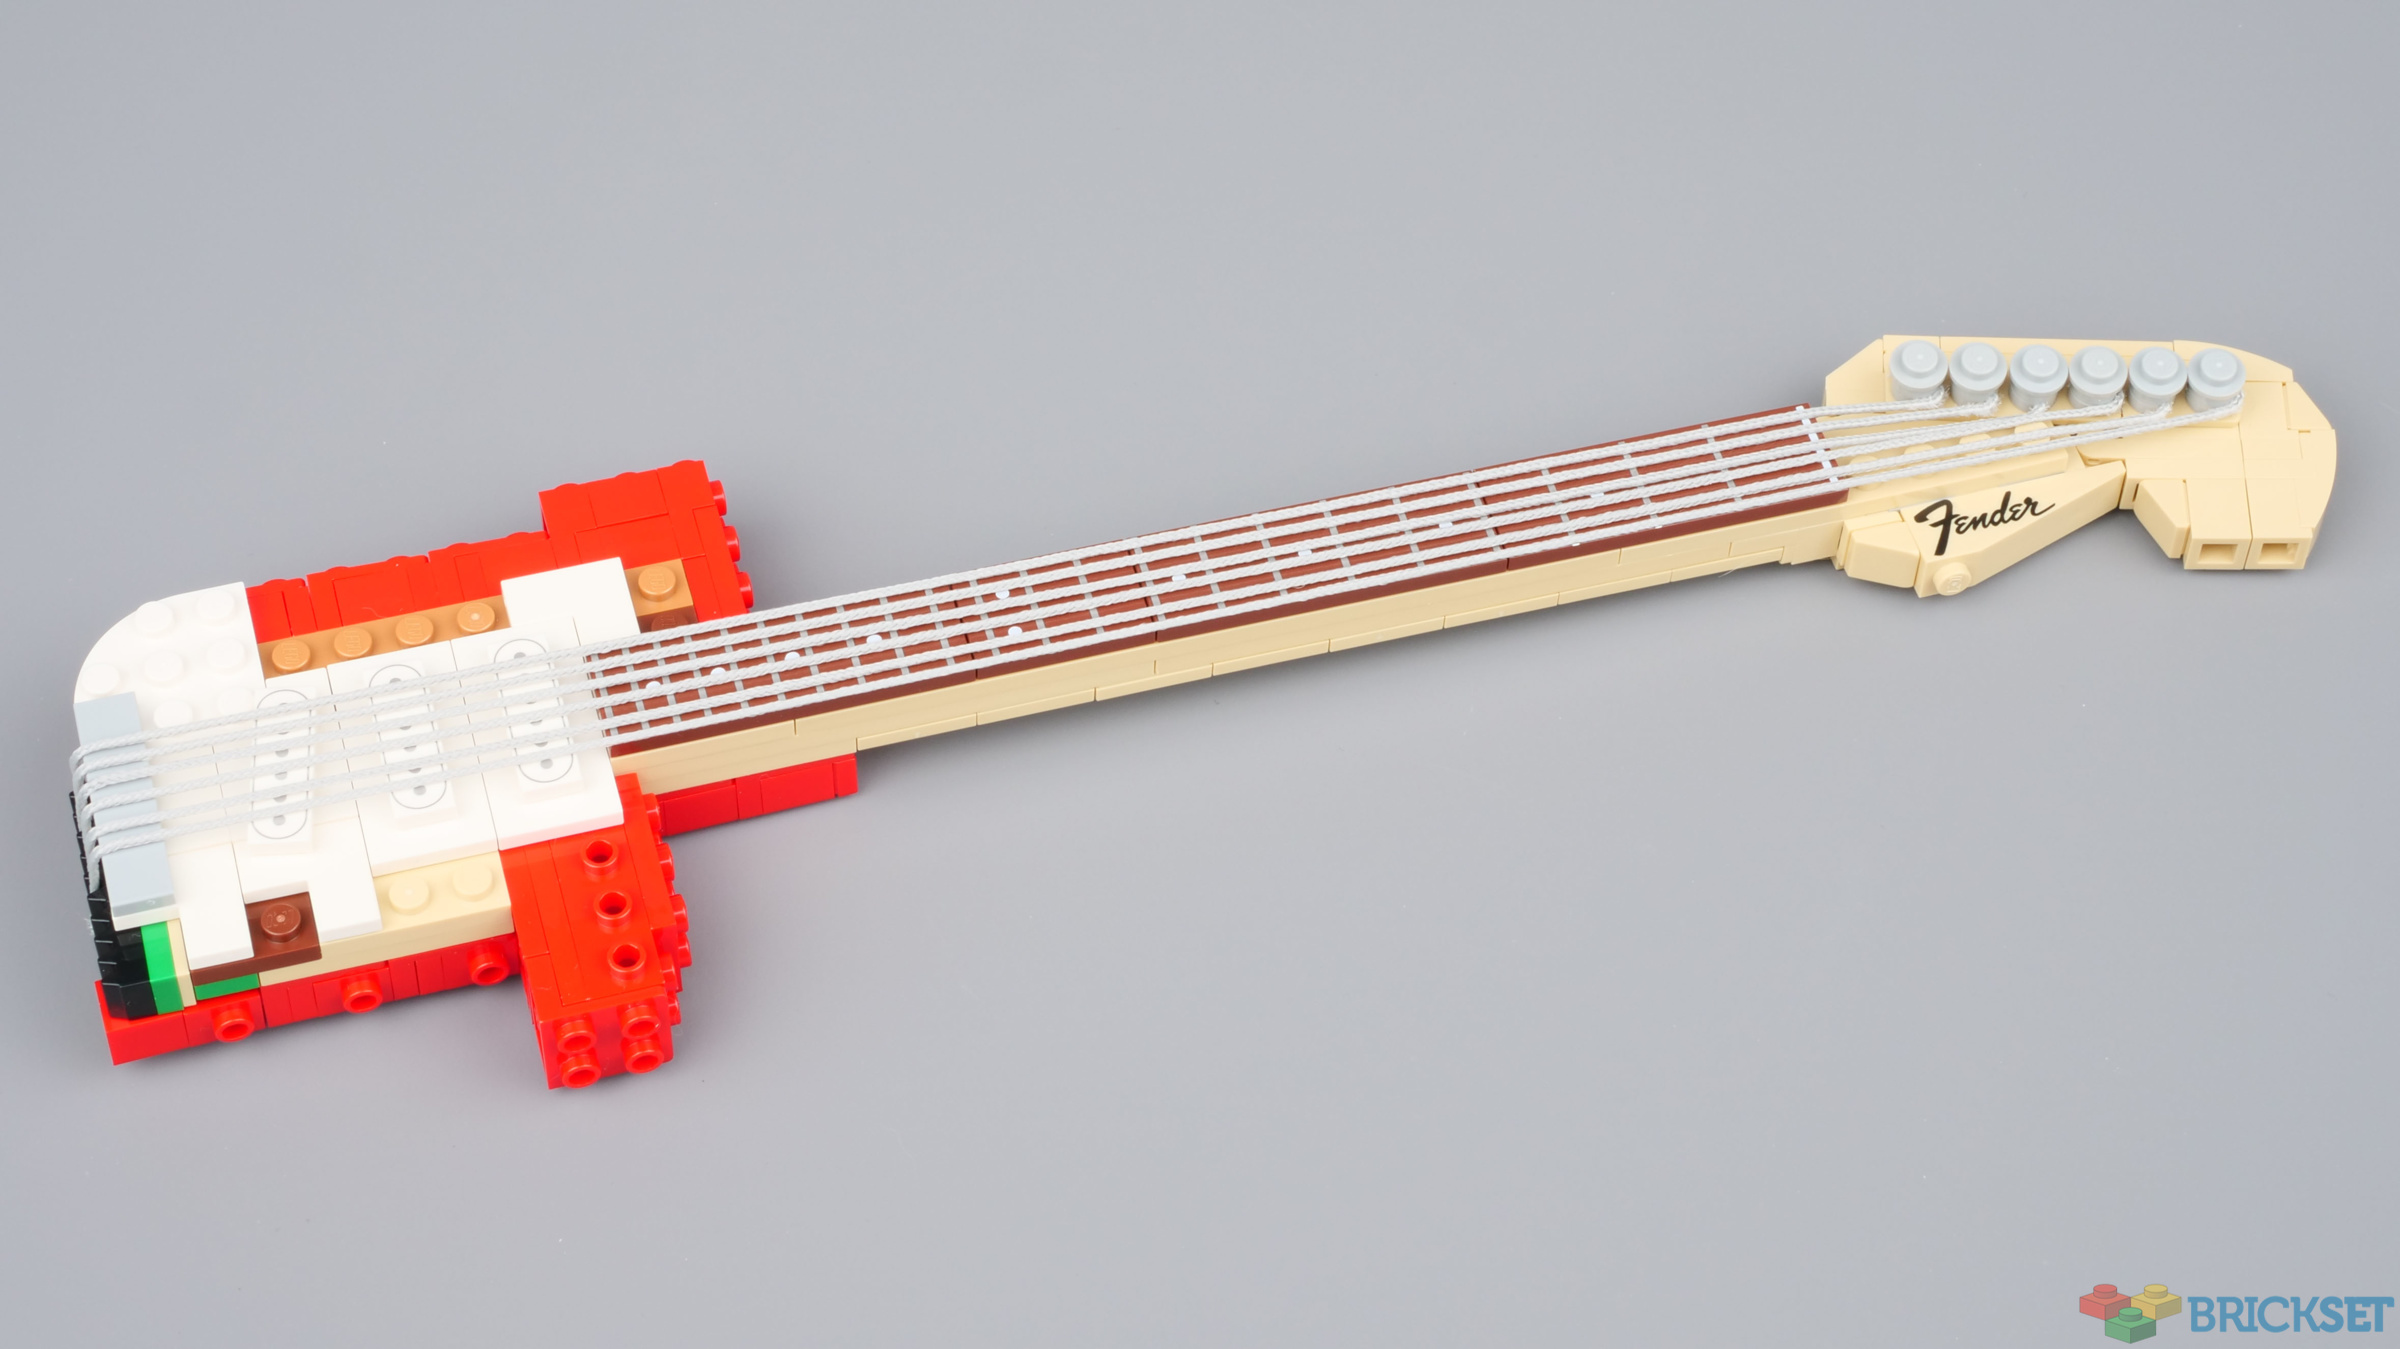 LEGO-Made Guitars : LEGO Guitar